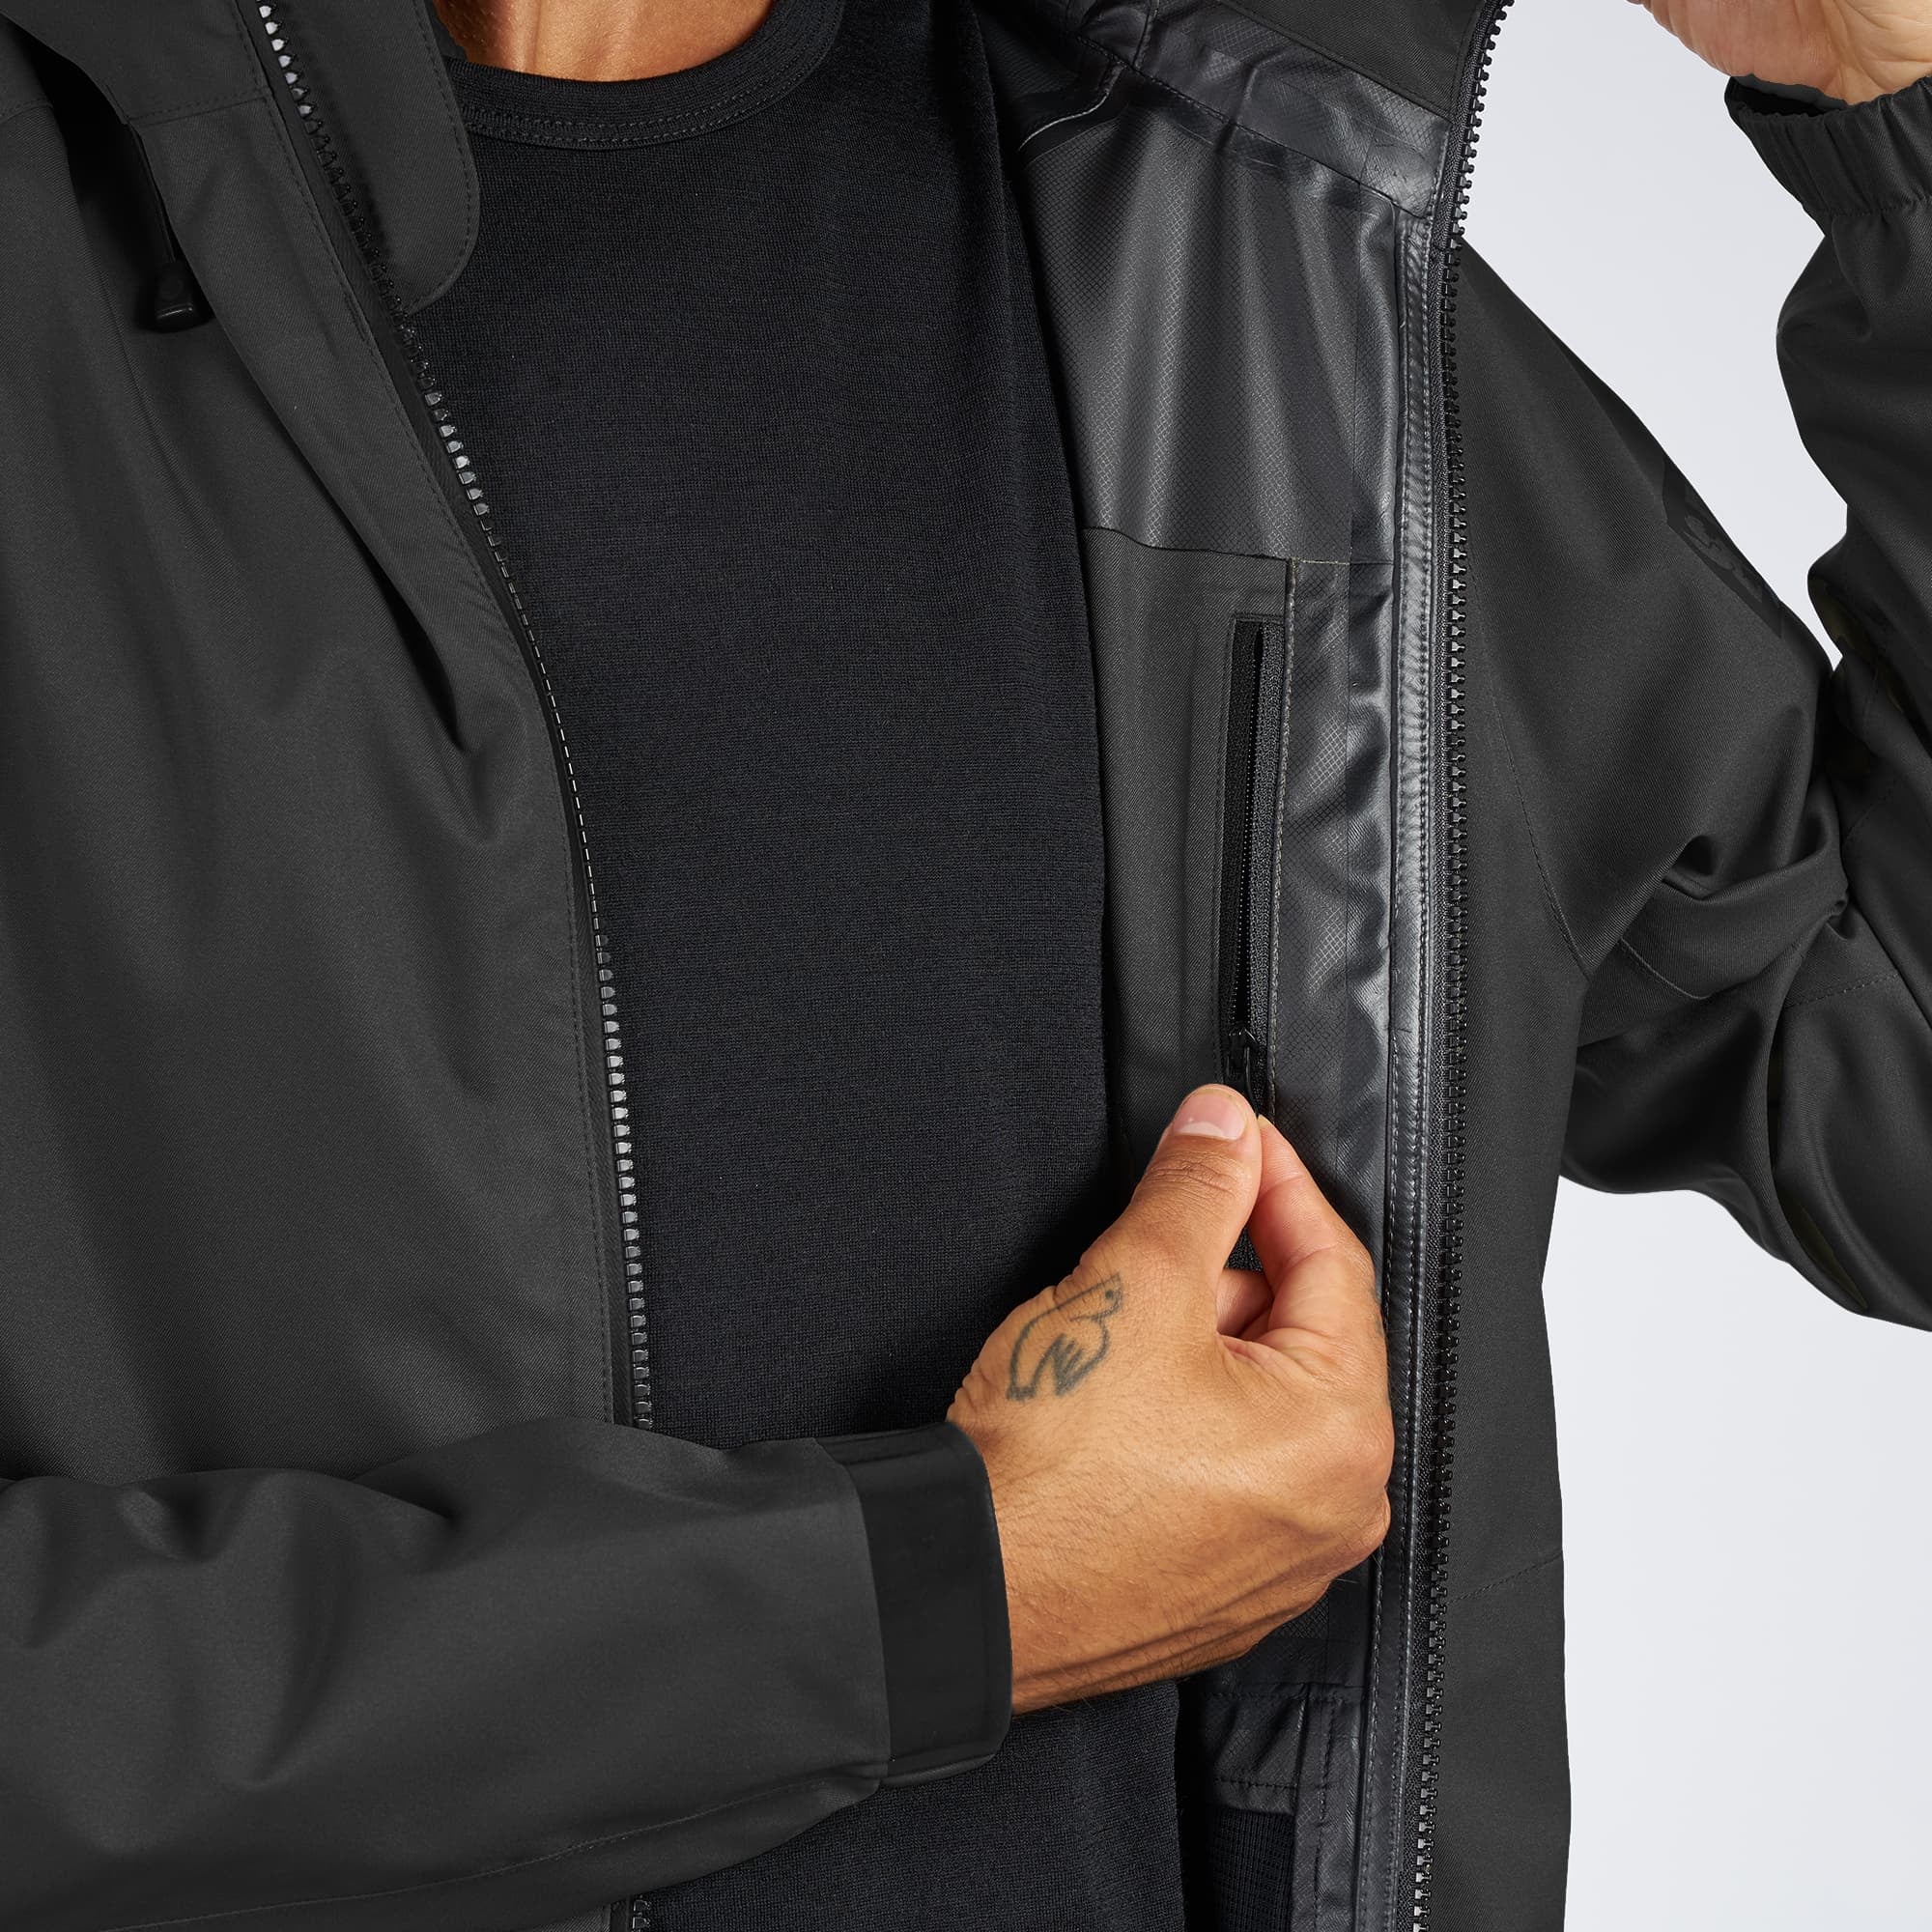 Waterproof rain jacket in black worn by a man inside zipper pocket